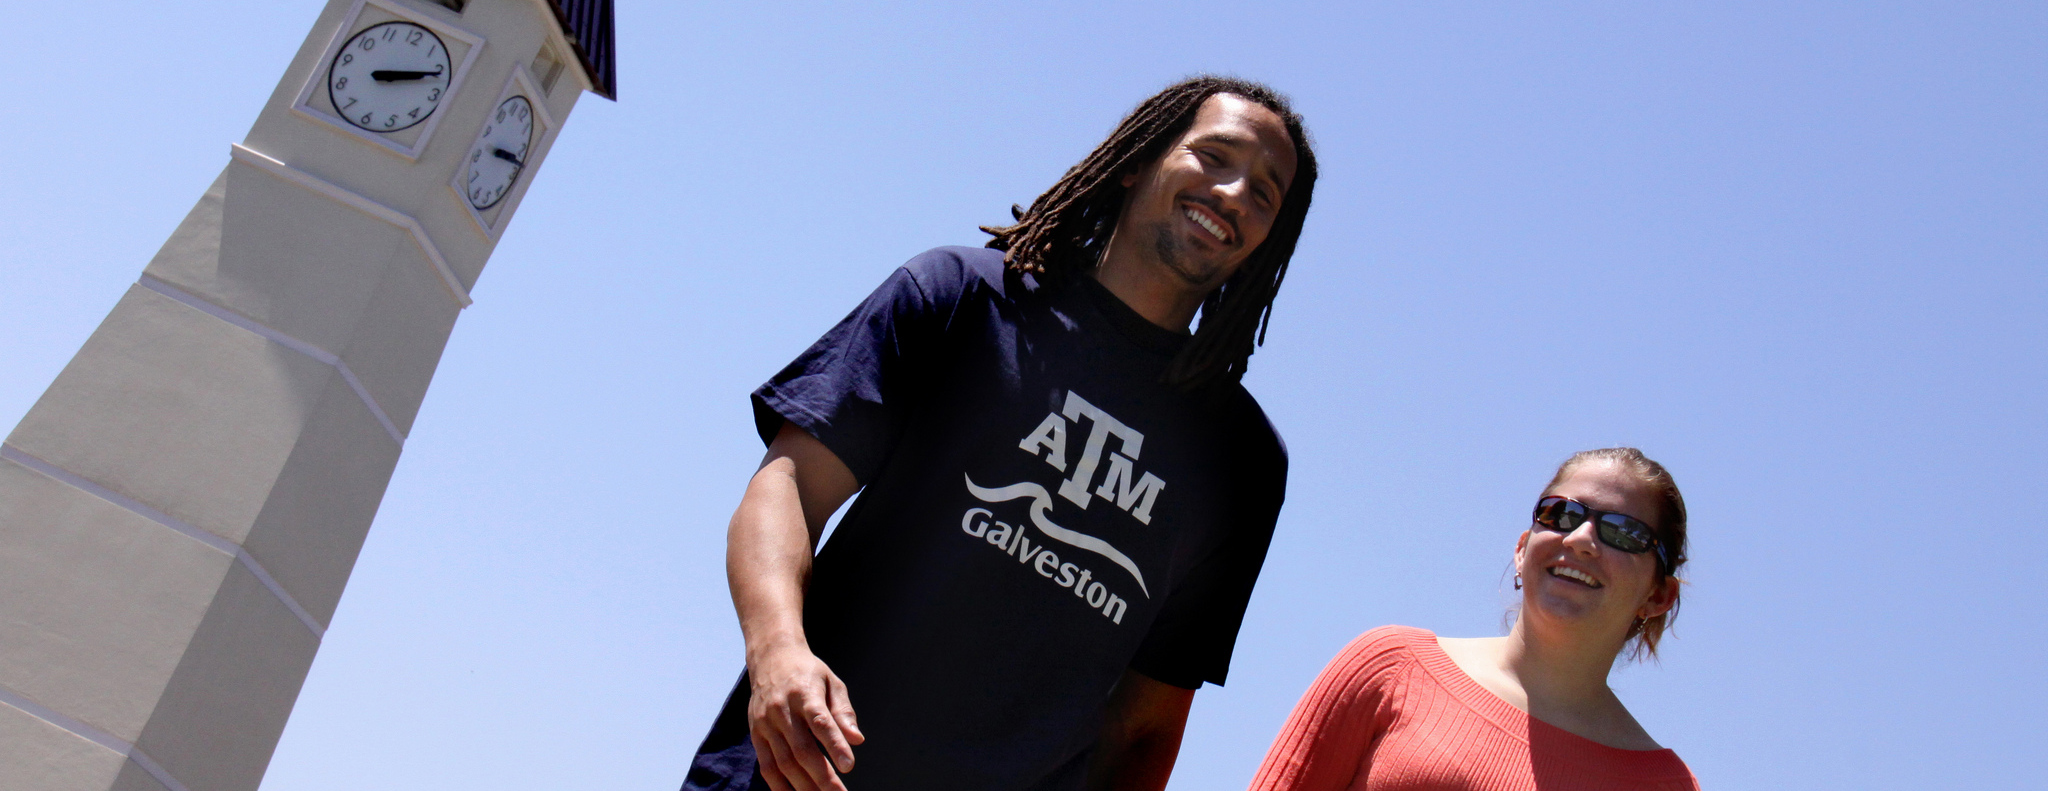 两名学生，其中一名穿着TAMU Galveston衬衫